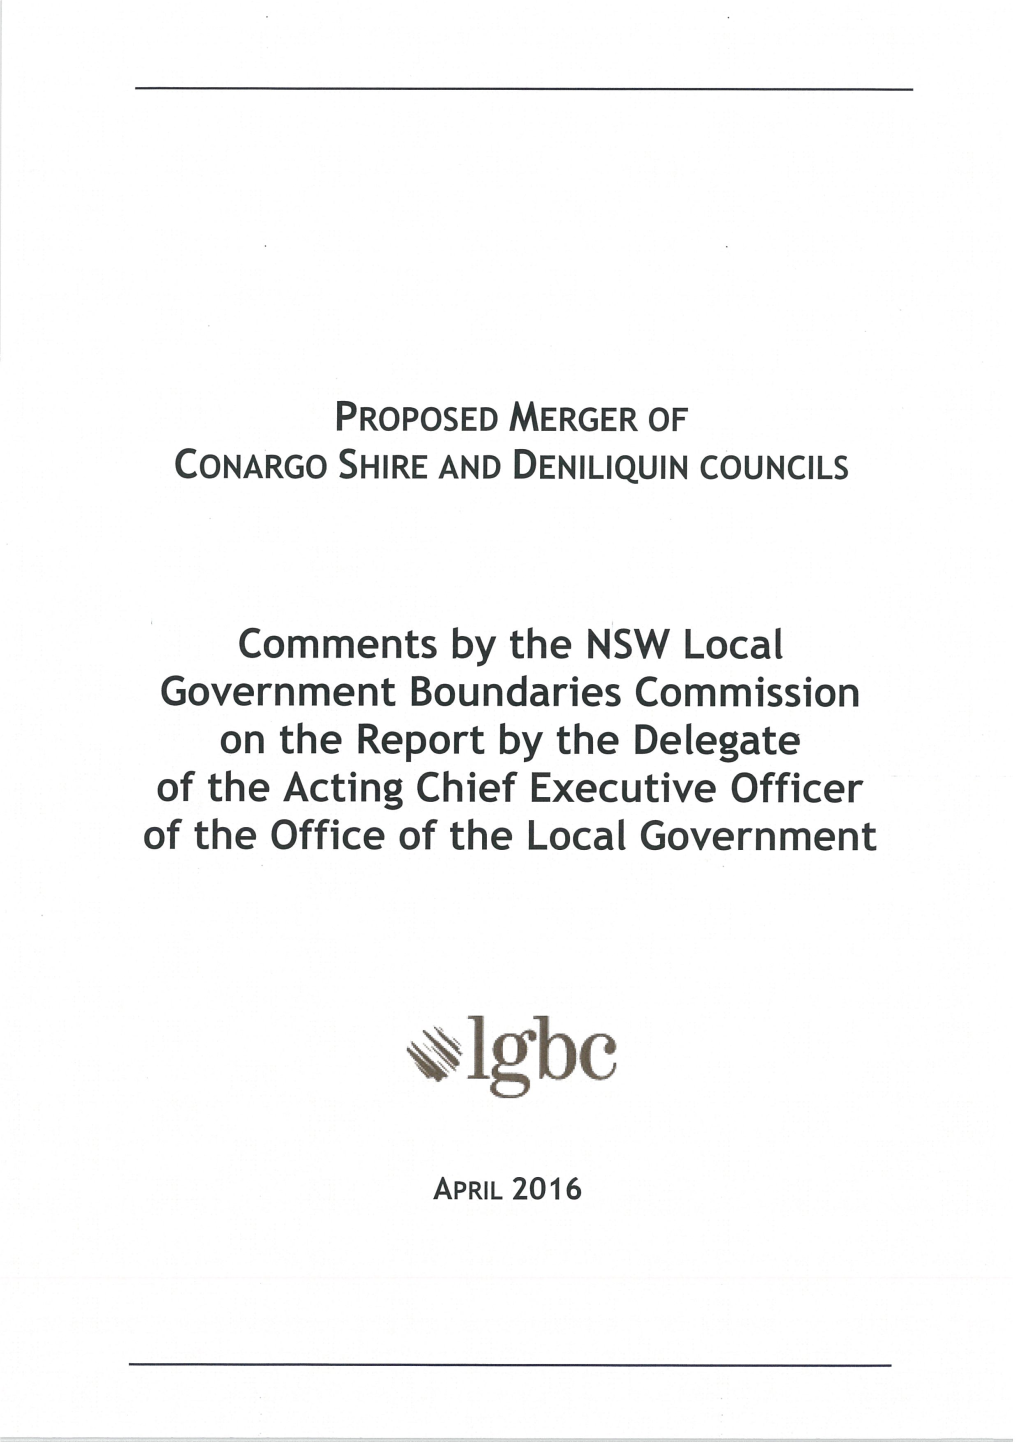 Conargo and Deniliquin 1 Local Government Boundaries Commission